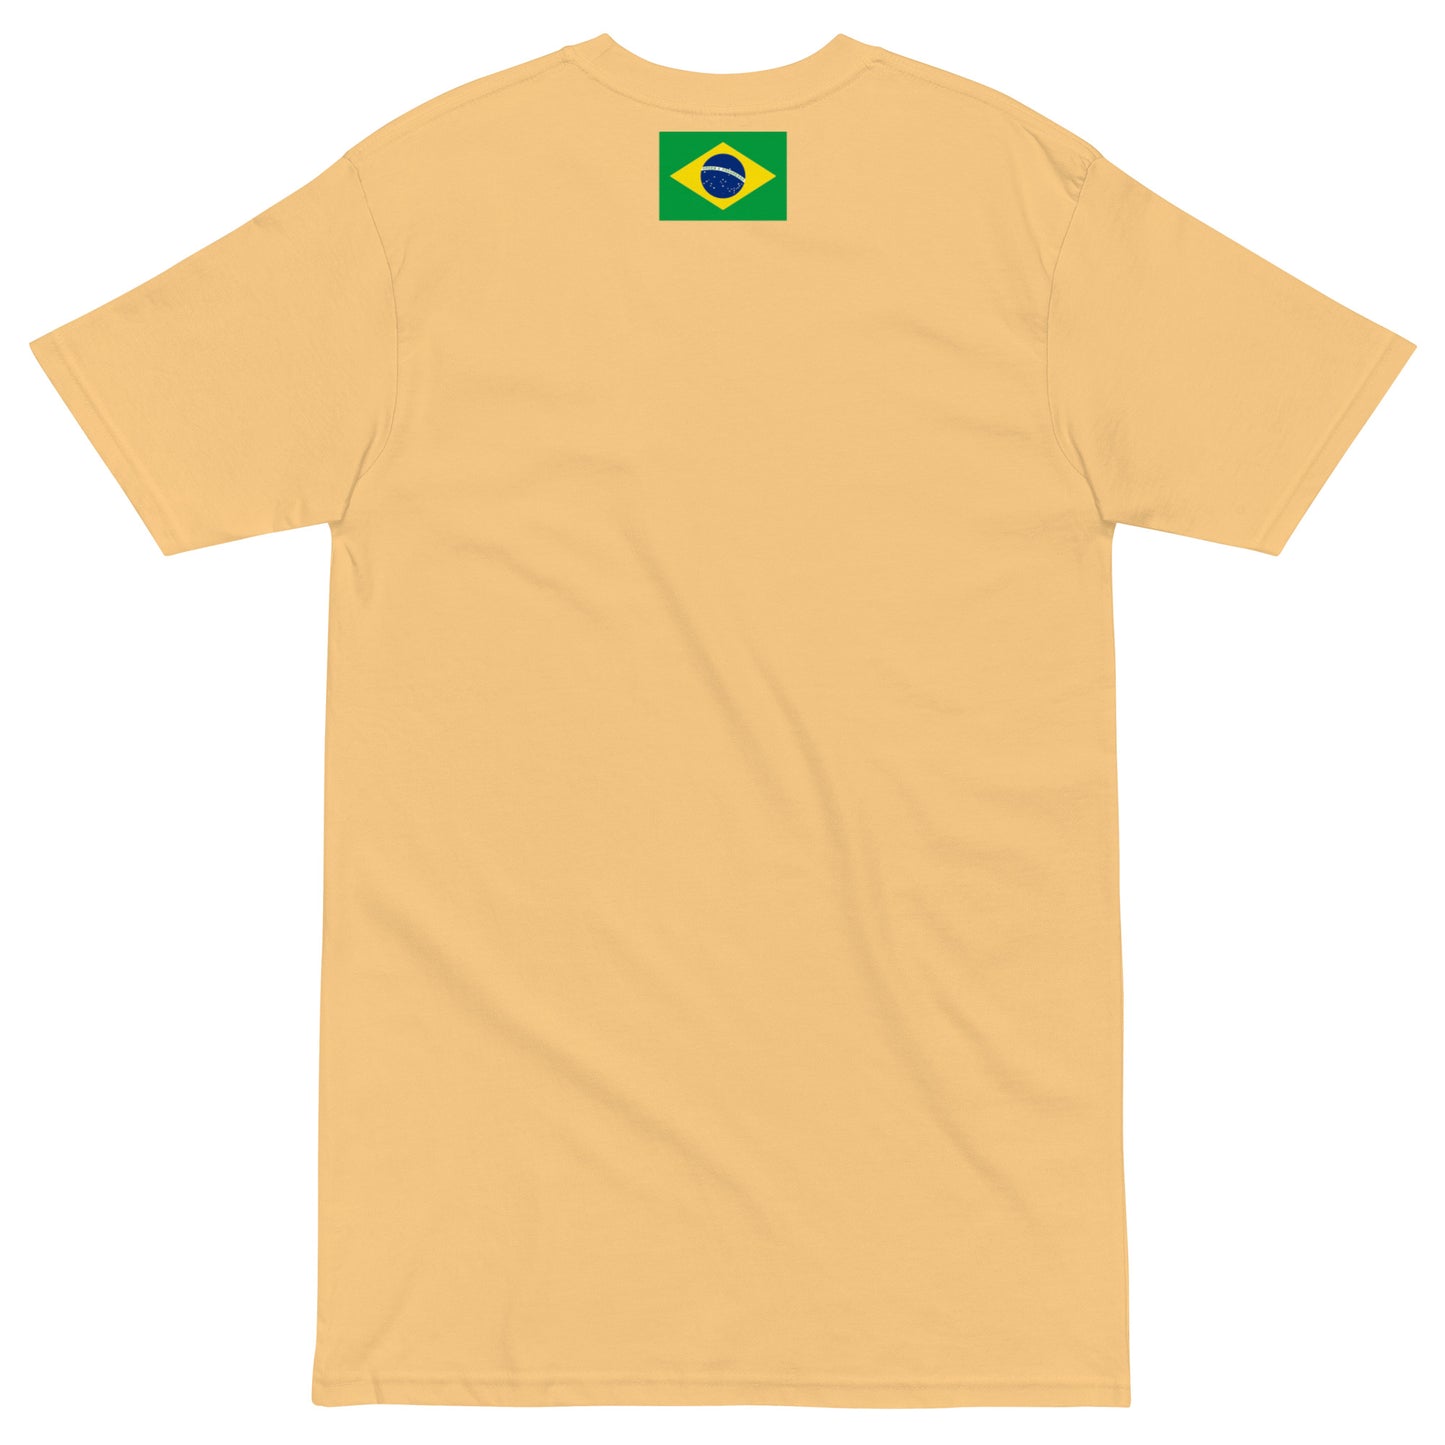 FLO BJJ minimalist t-shirt